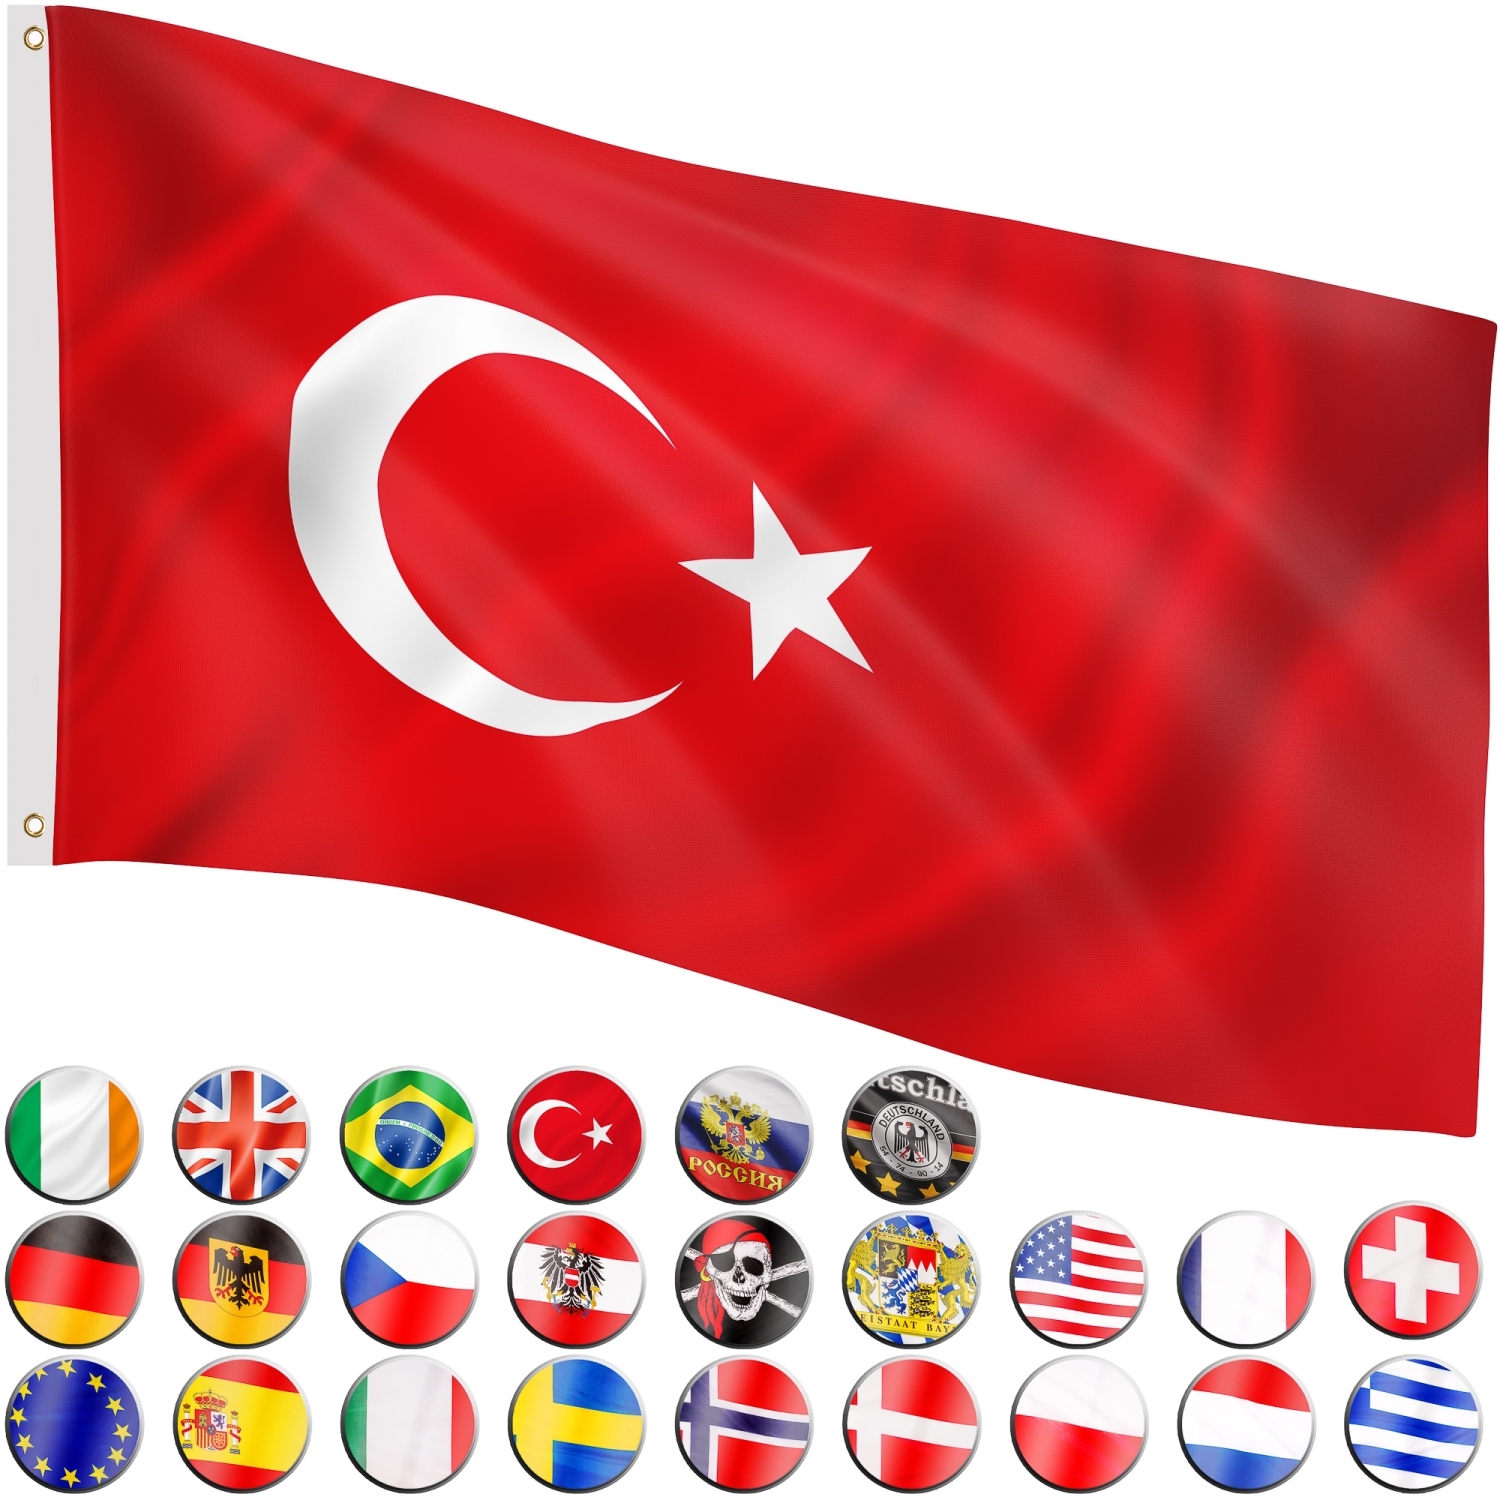 Türkei Flagge / Welche Kreditkarte für Türkei Reise (Visa, Mastercard